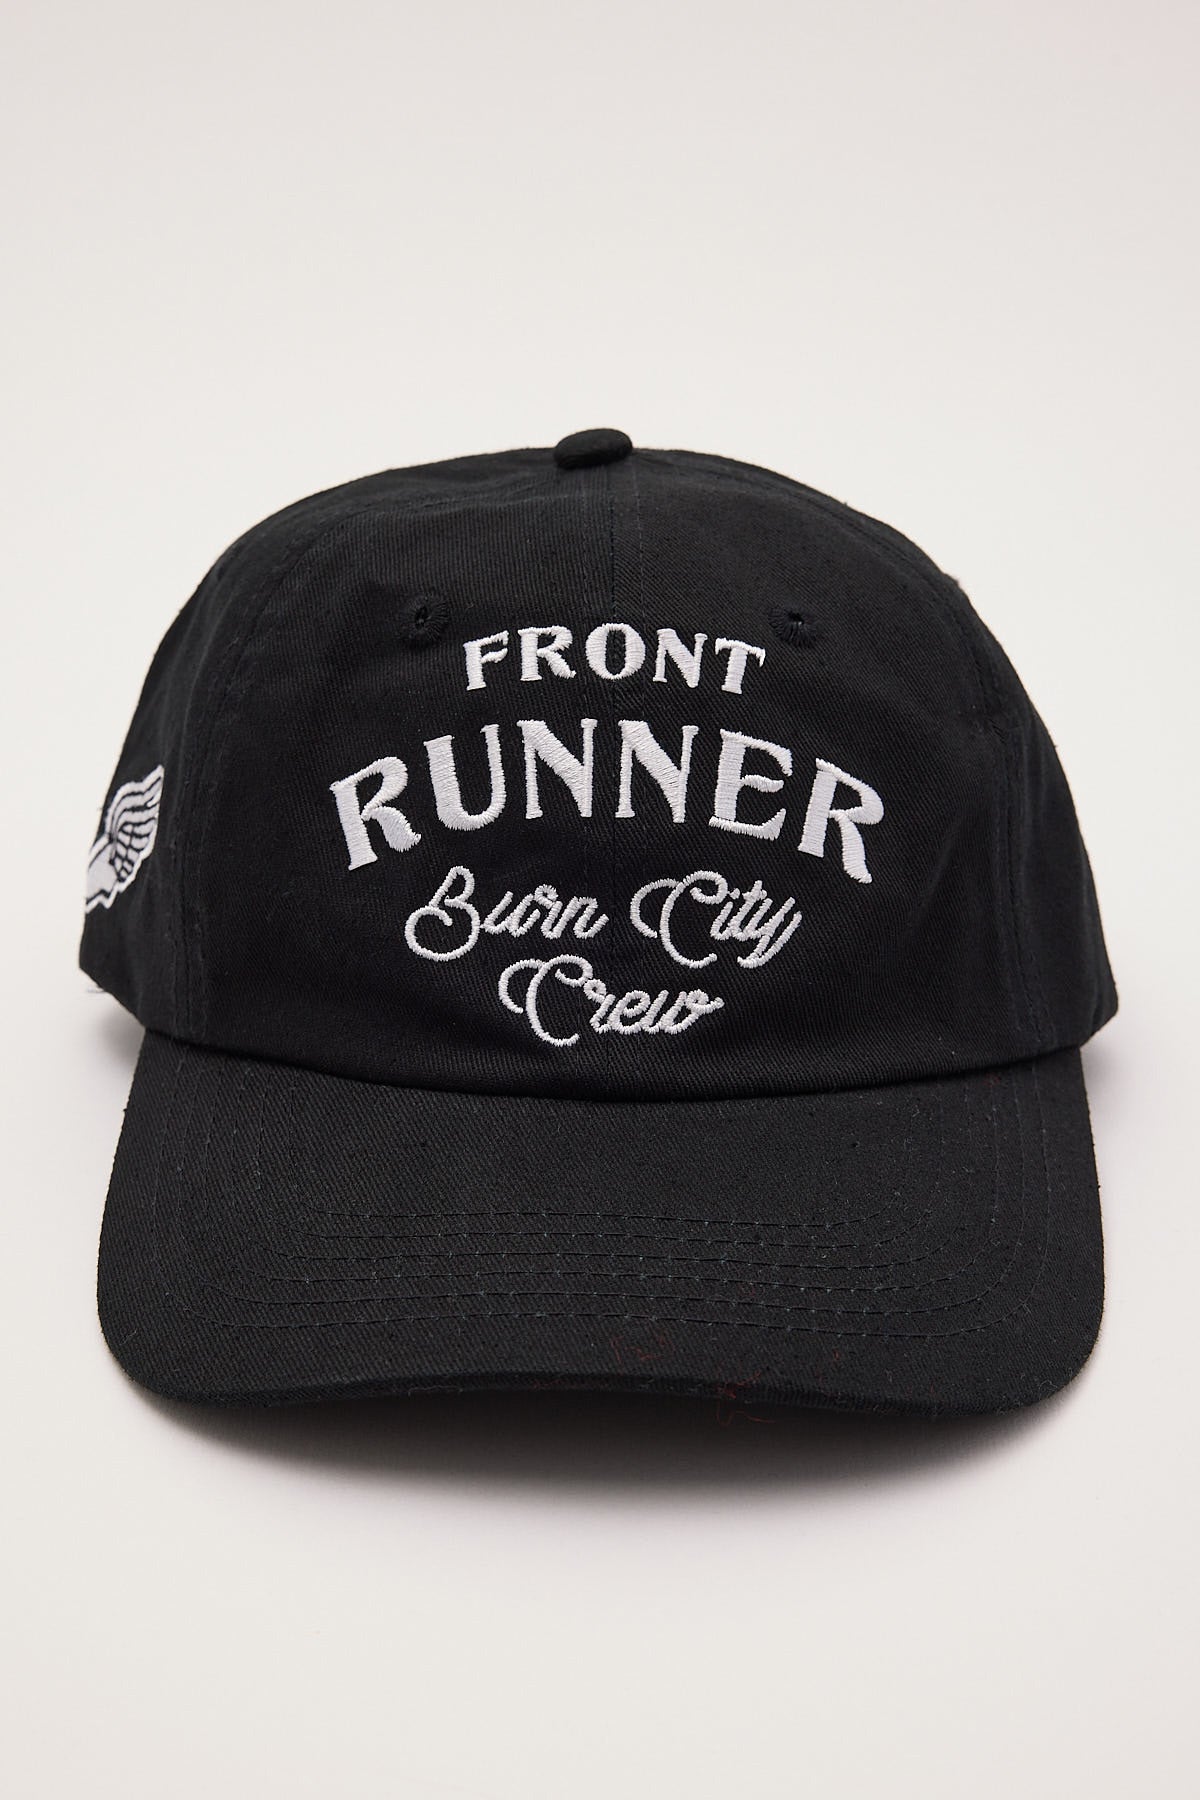 Front Runner Burn City Cap Black